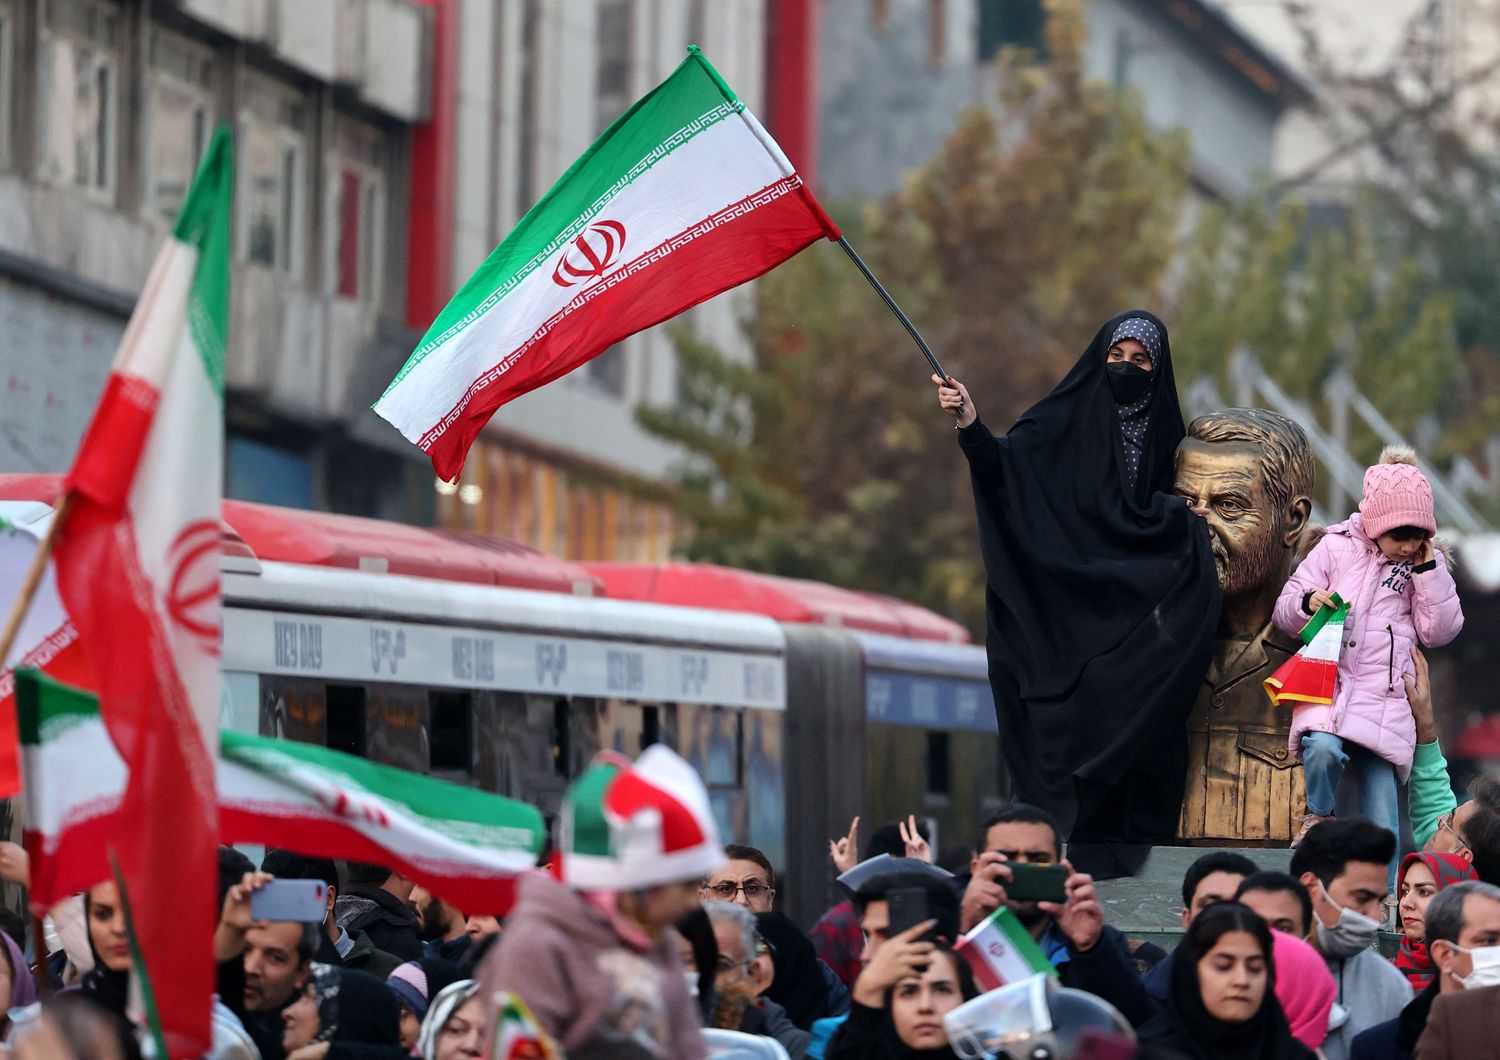 Proteste a Teheran